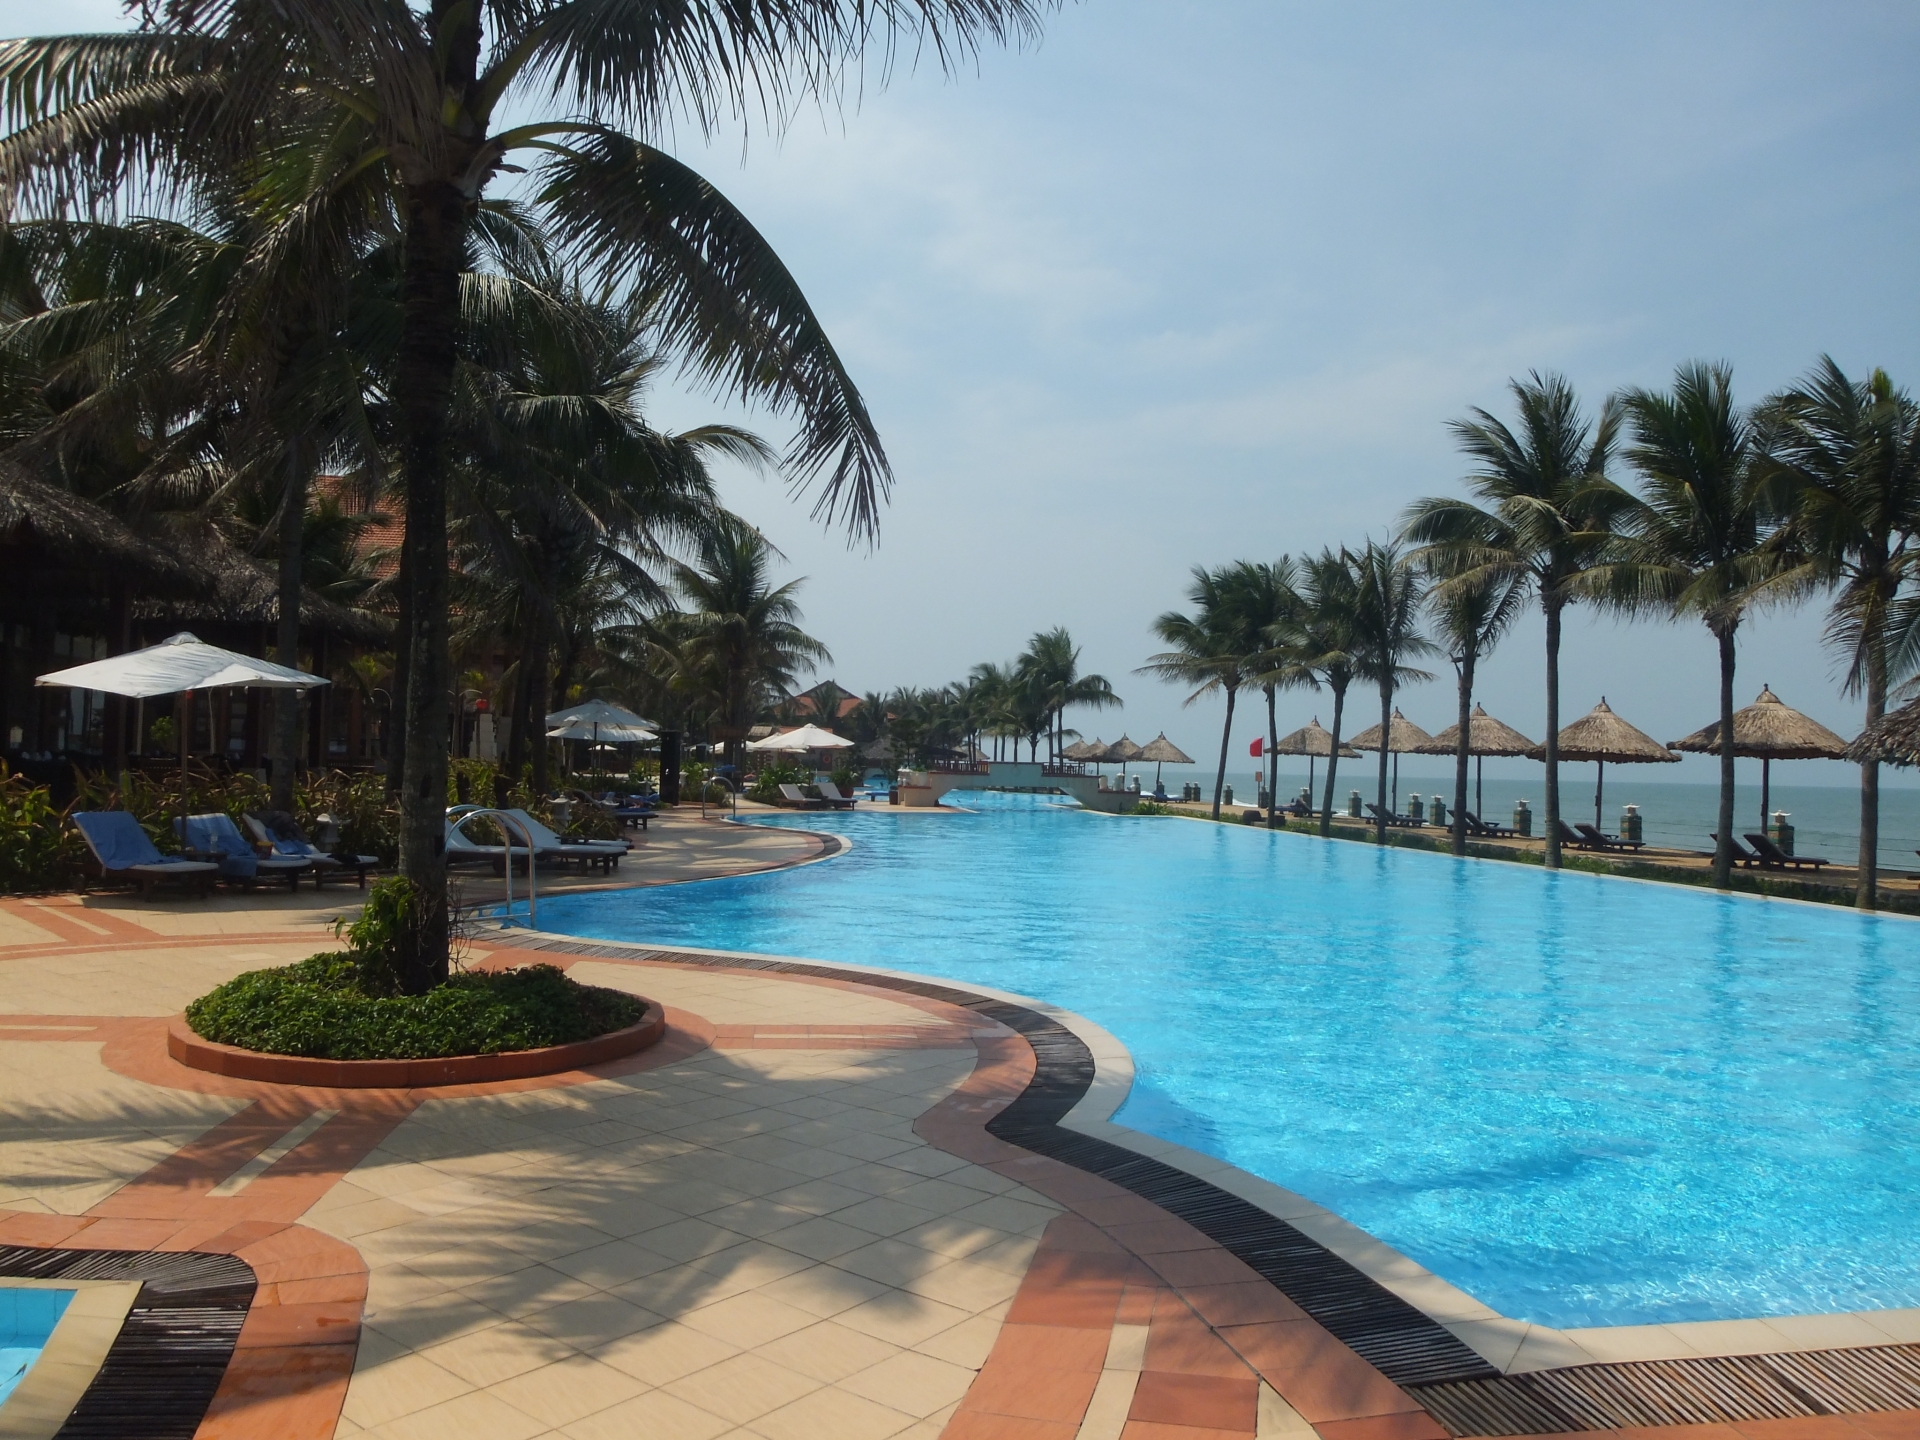 Resort hotel in Danang